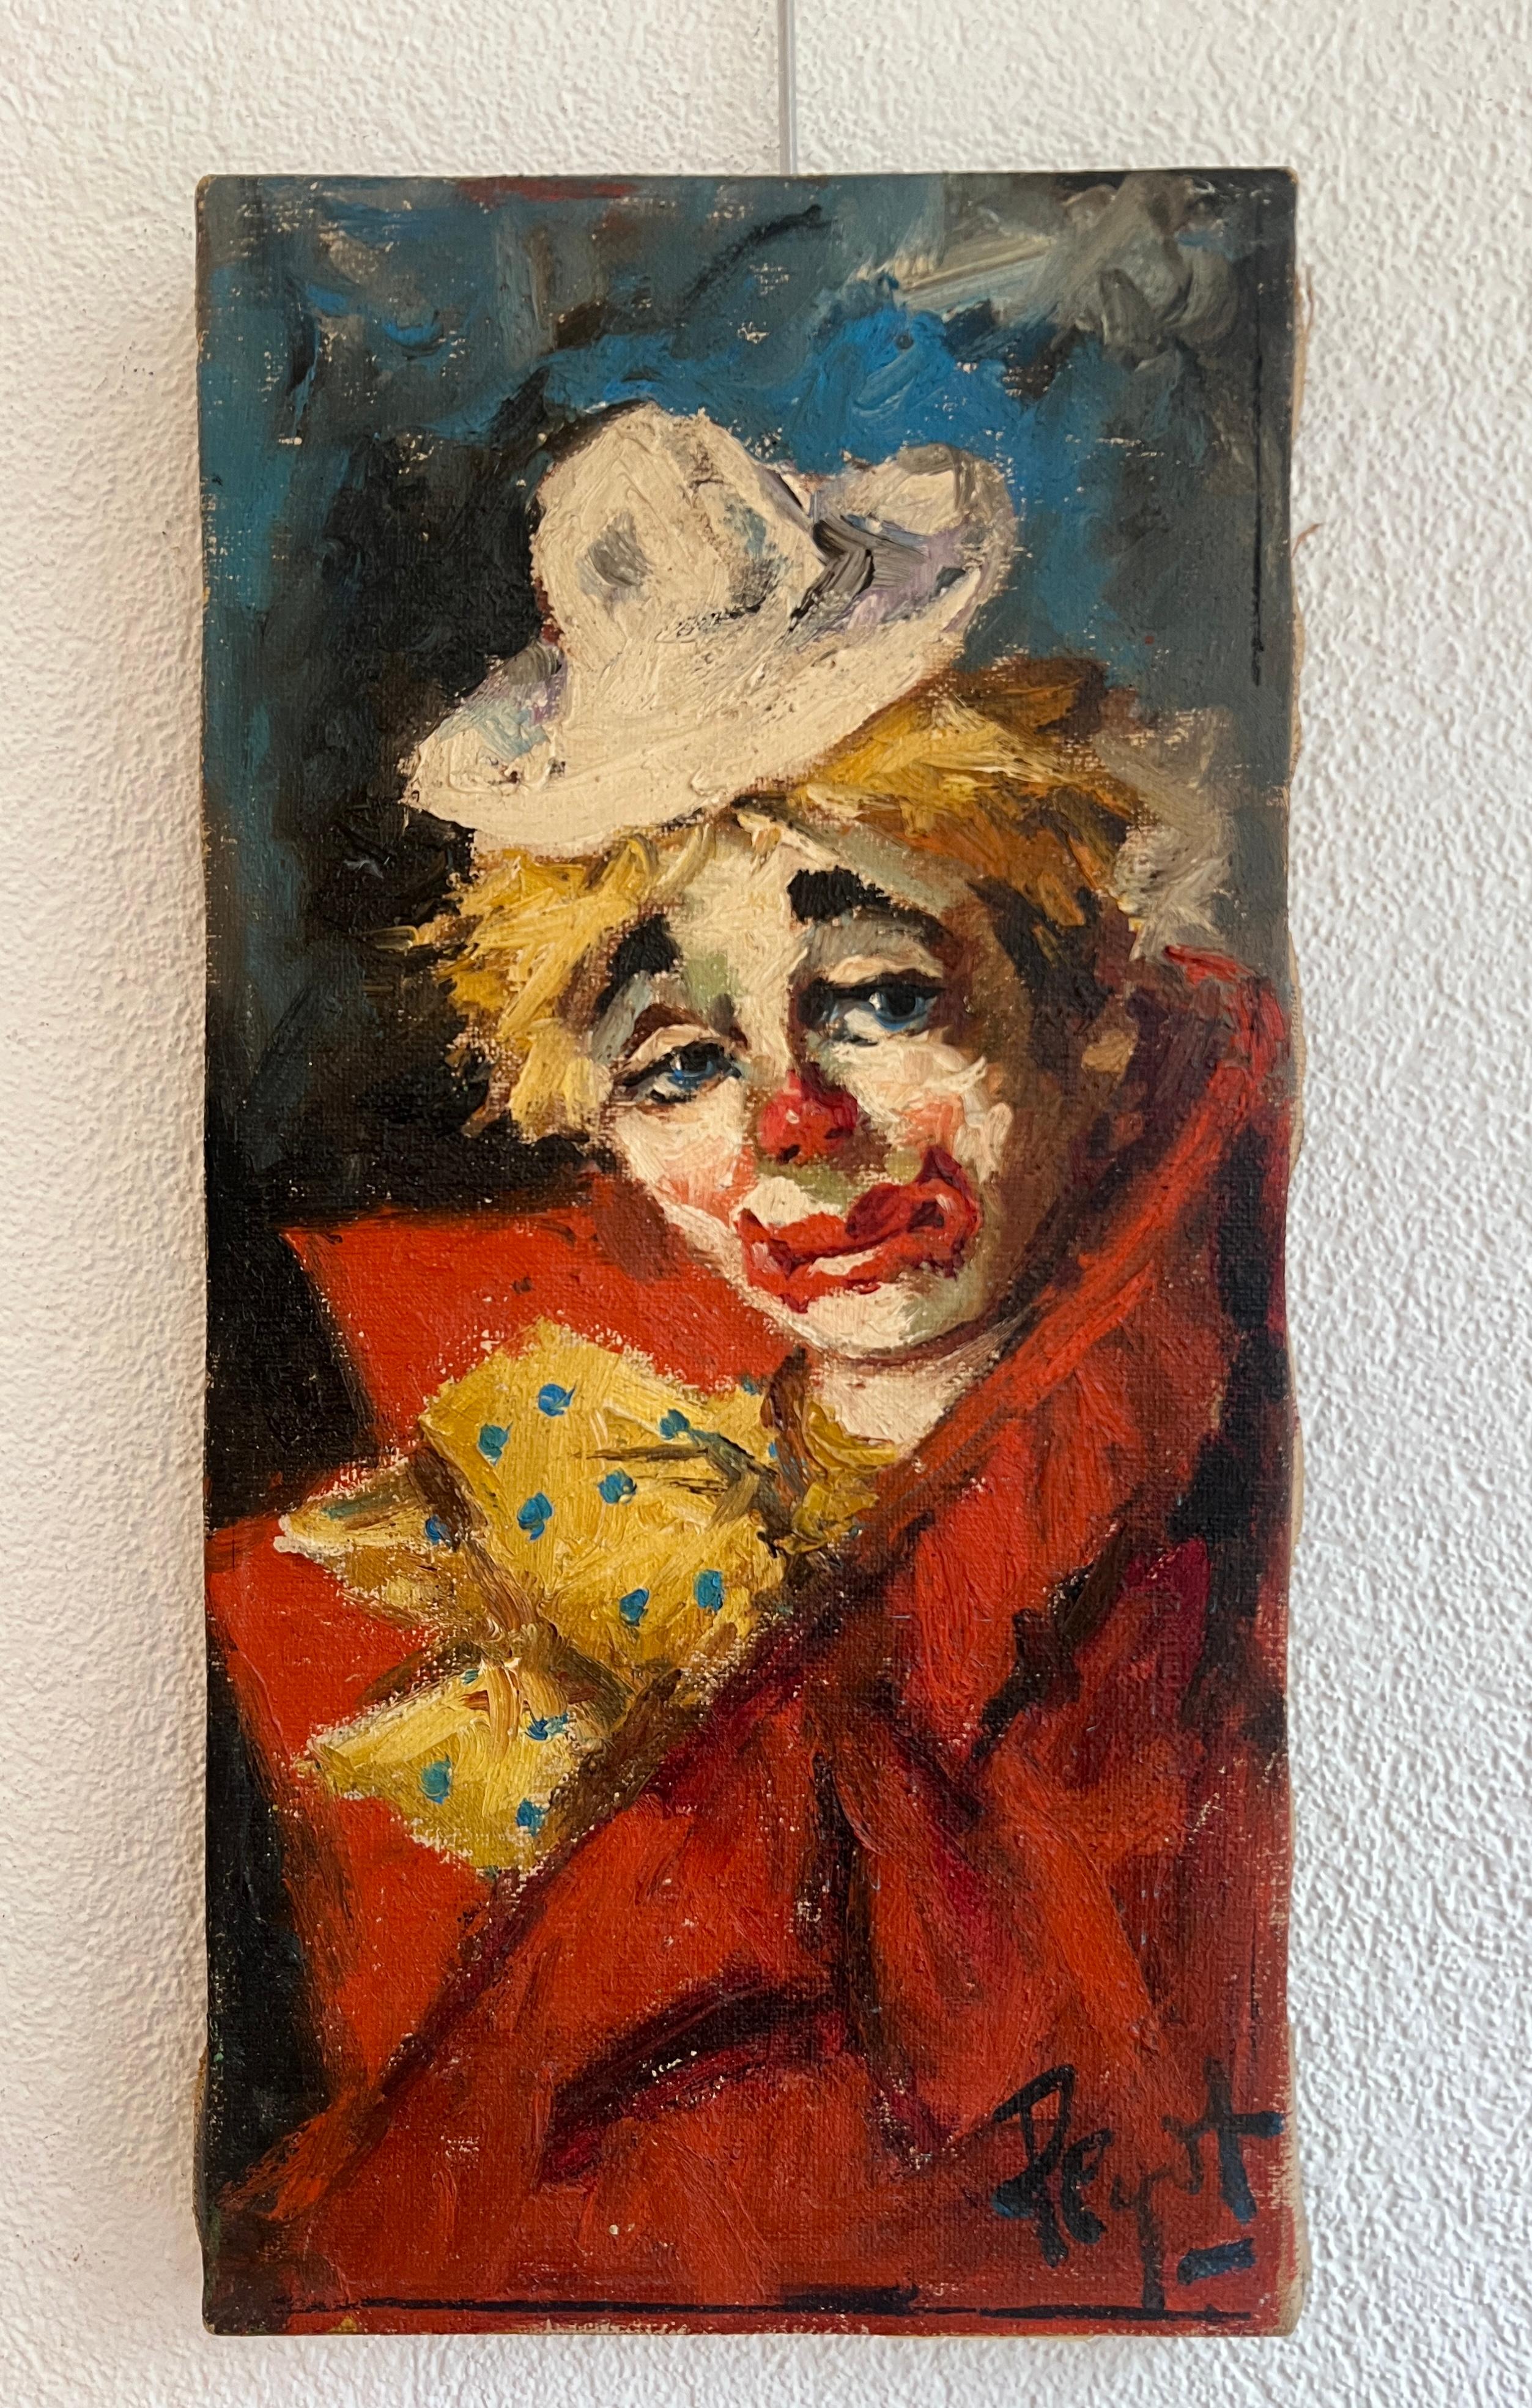 Clown triste - Painting de Peyot